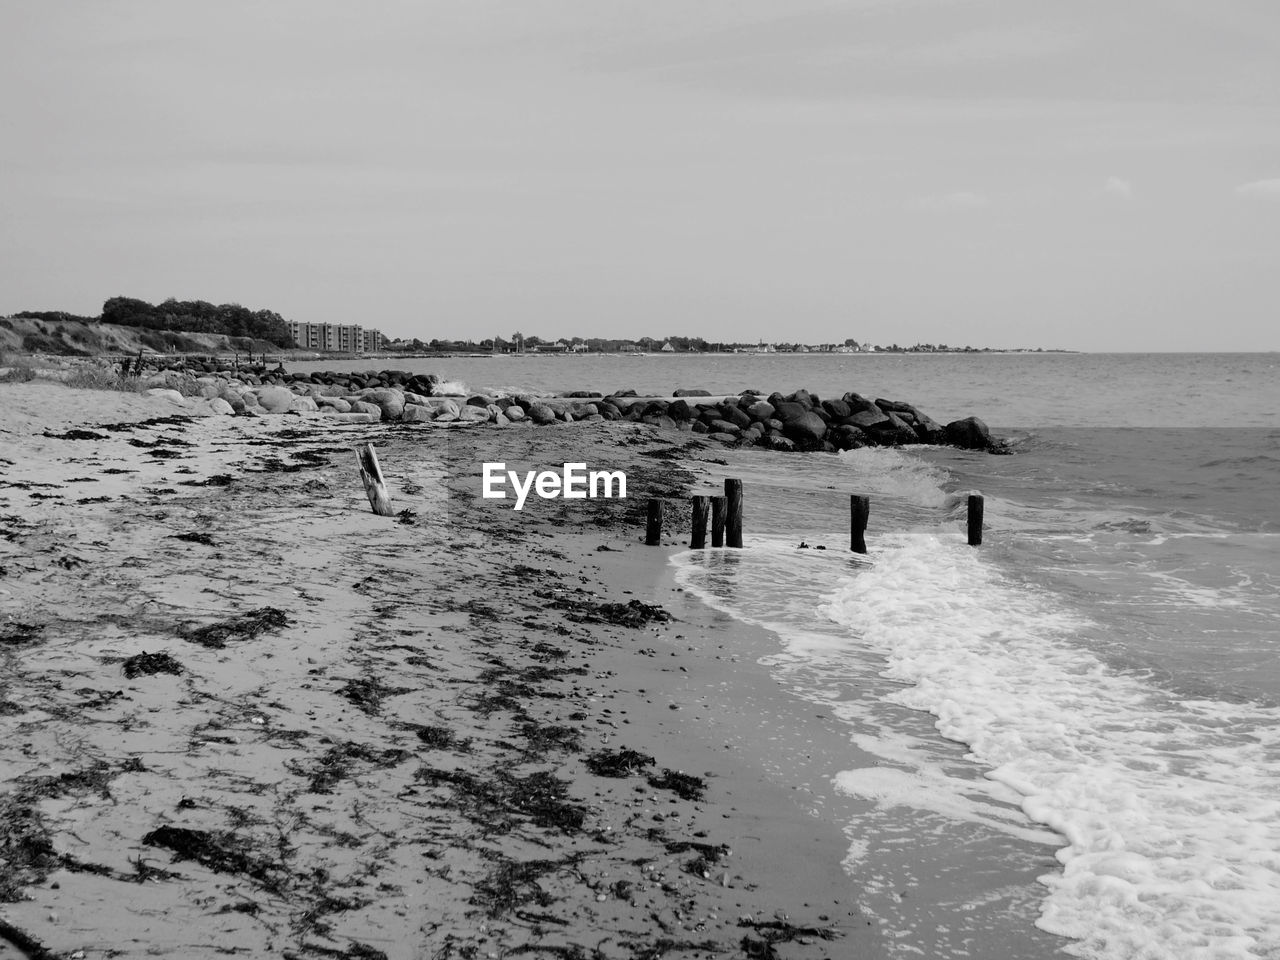 Danish beach in black and white 